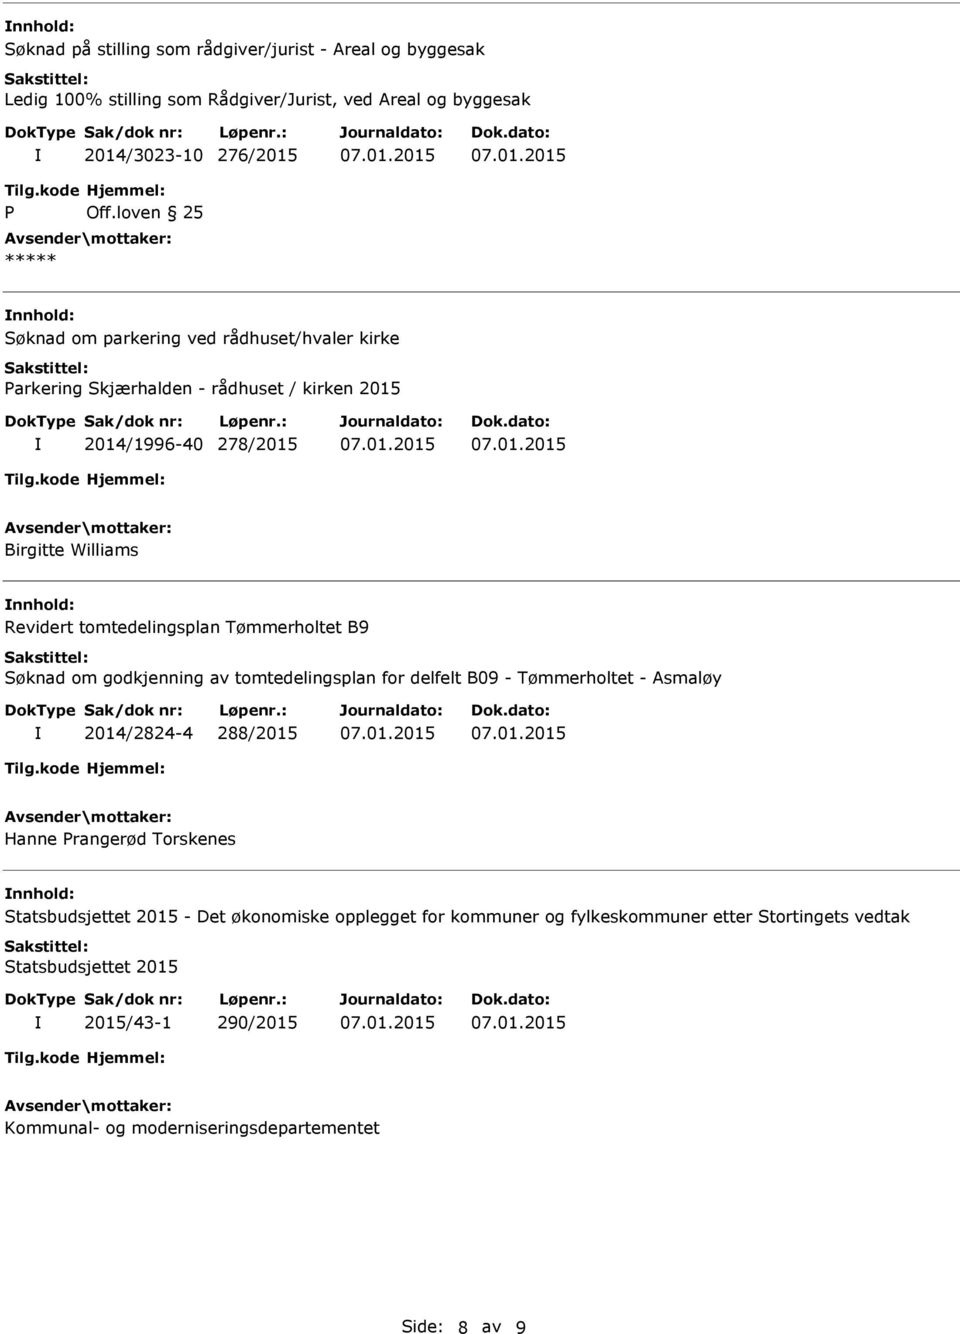 B9 Søknad om godkjenning av tomtedelingsplan for delfelt B09 - Tømmerholtet - Asmaløy 2014/2824-4 288/2015 Hanne Prangerød Torskenes Statsbudsjettet 2015 - Det